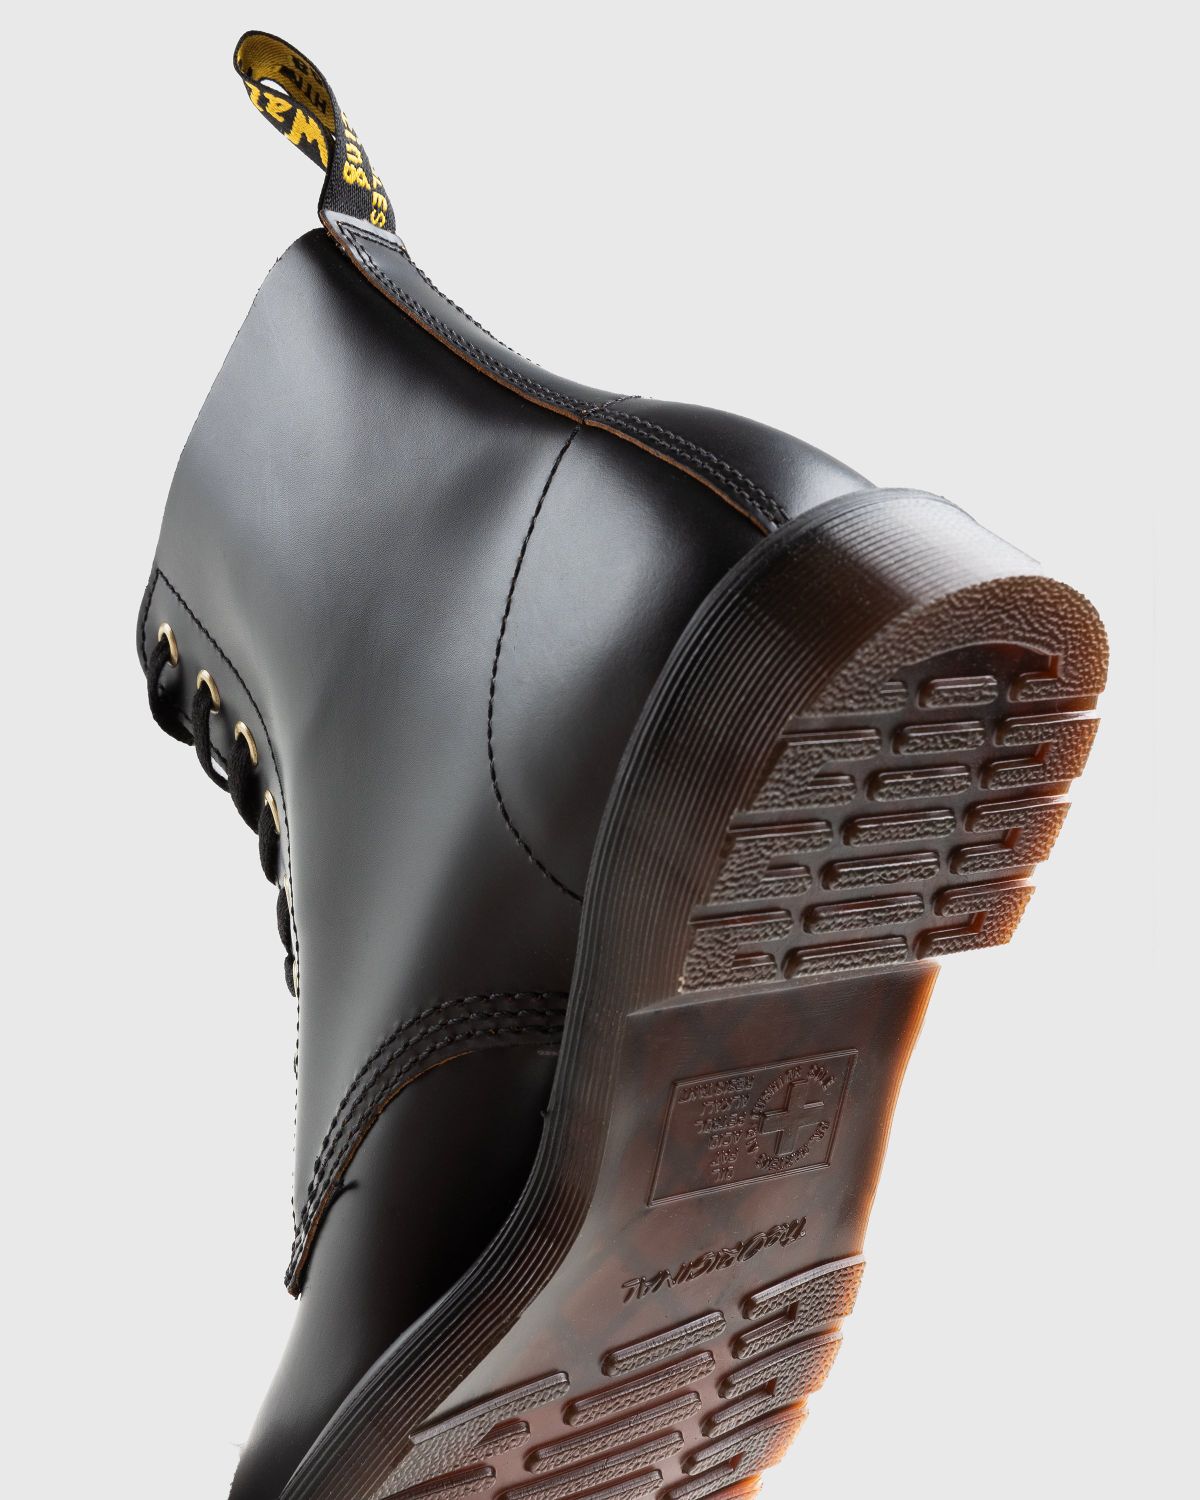 Dr. Martens – 1460 Vintage Smooth Black - Laced Up Boots - Black - Image 6